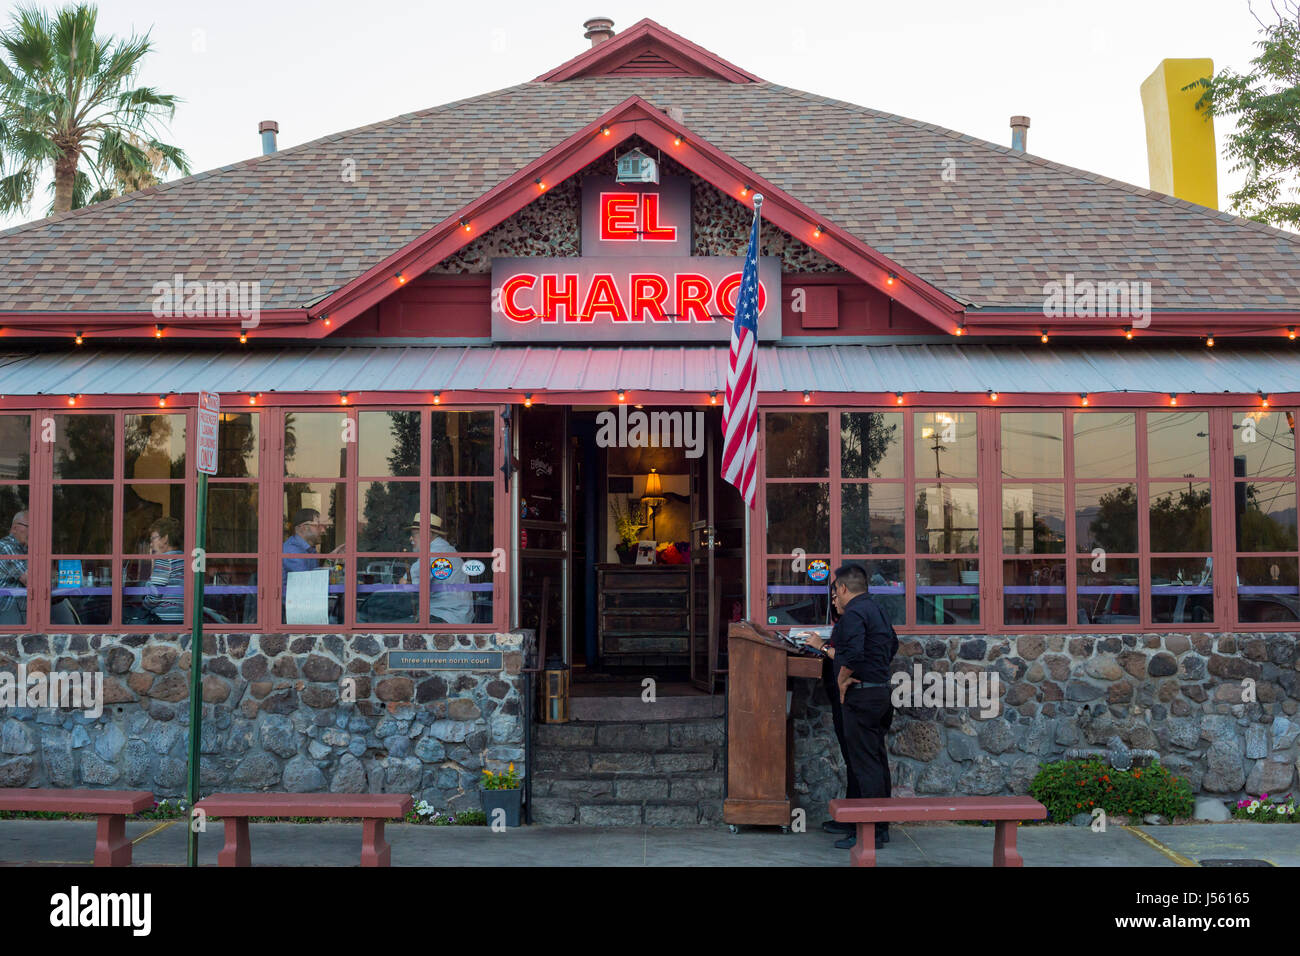 Tucson, Arizona - l'El Charro cafe, un restaurant mexicain populaire qui propose une cuisine de Sonora à l'intérieur d'un siècle-vieille maison. Banque D'Images